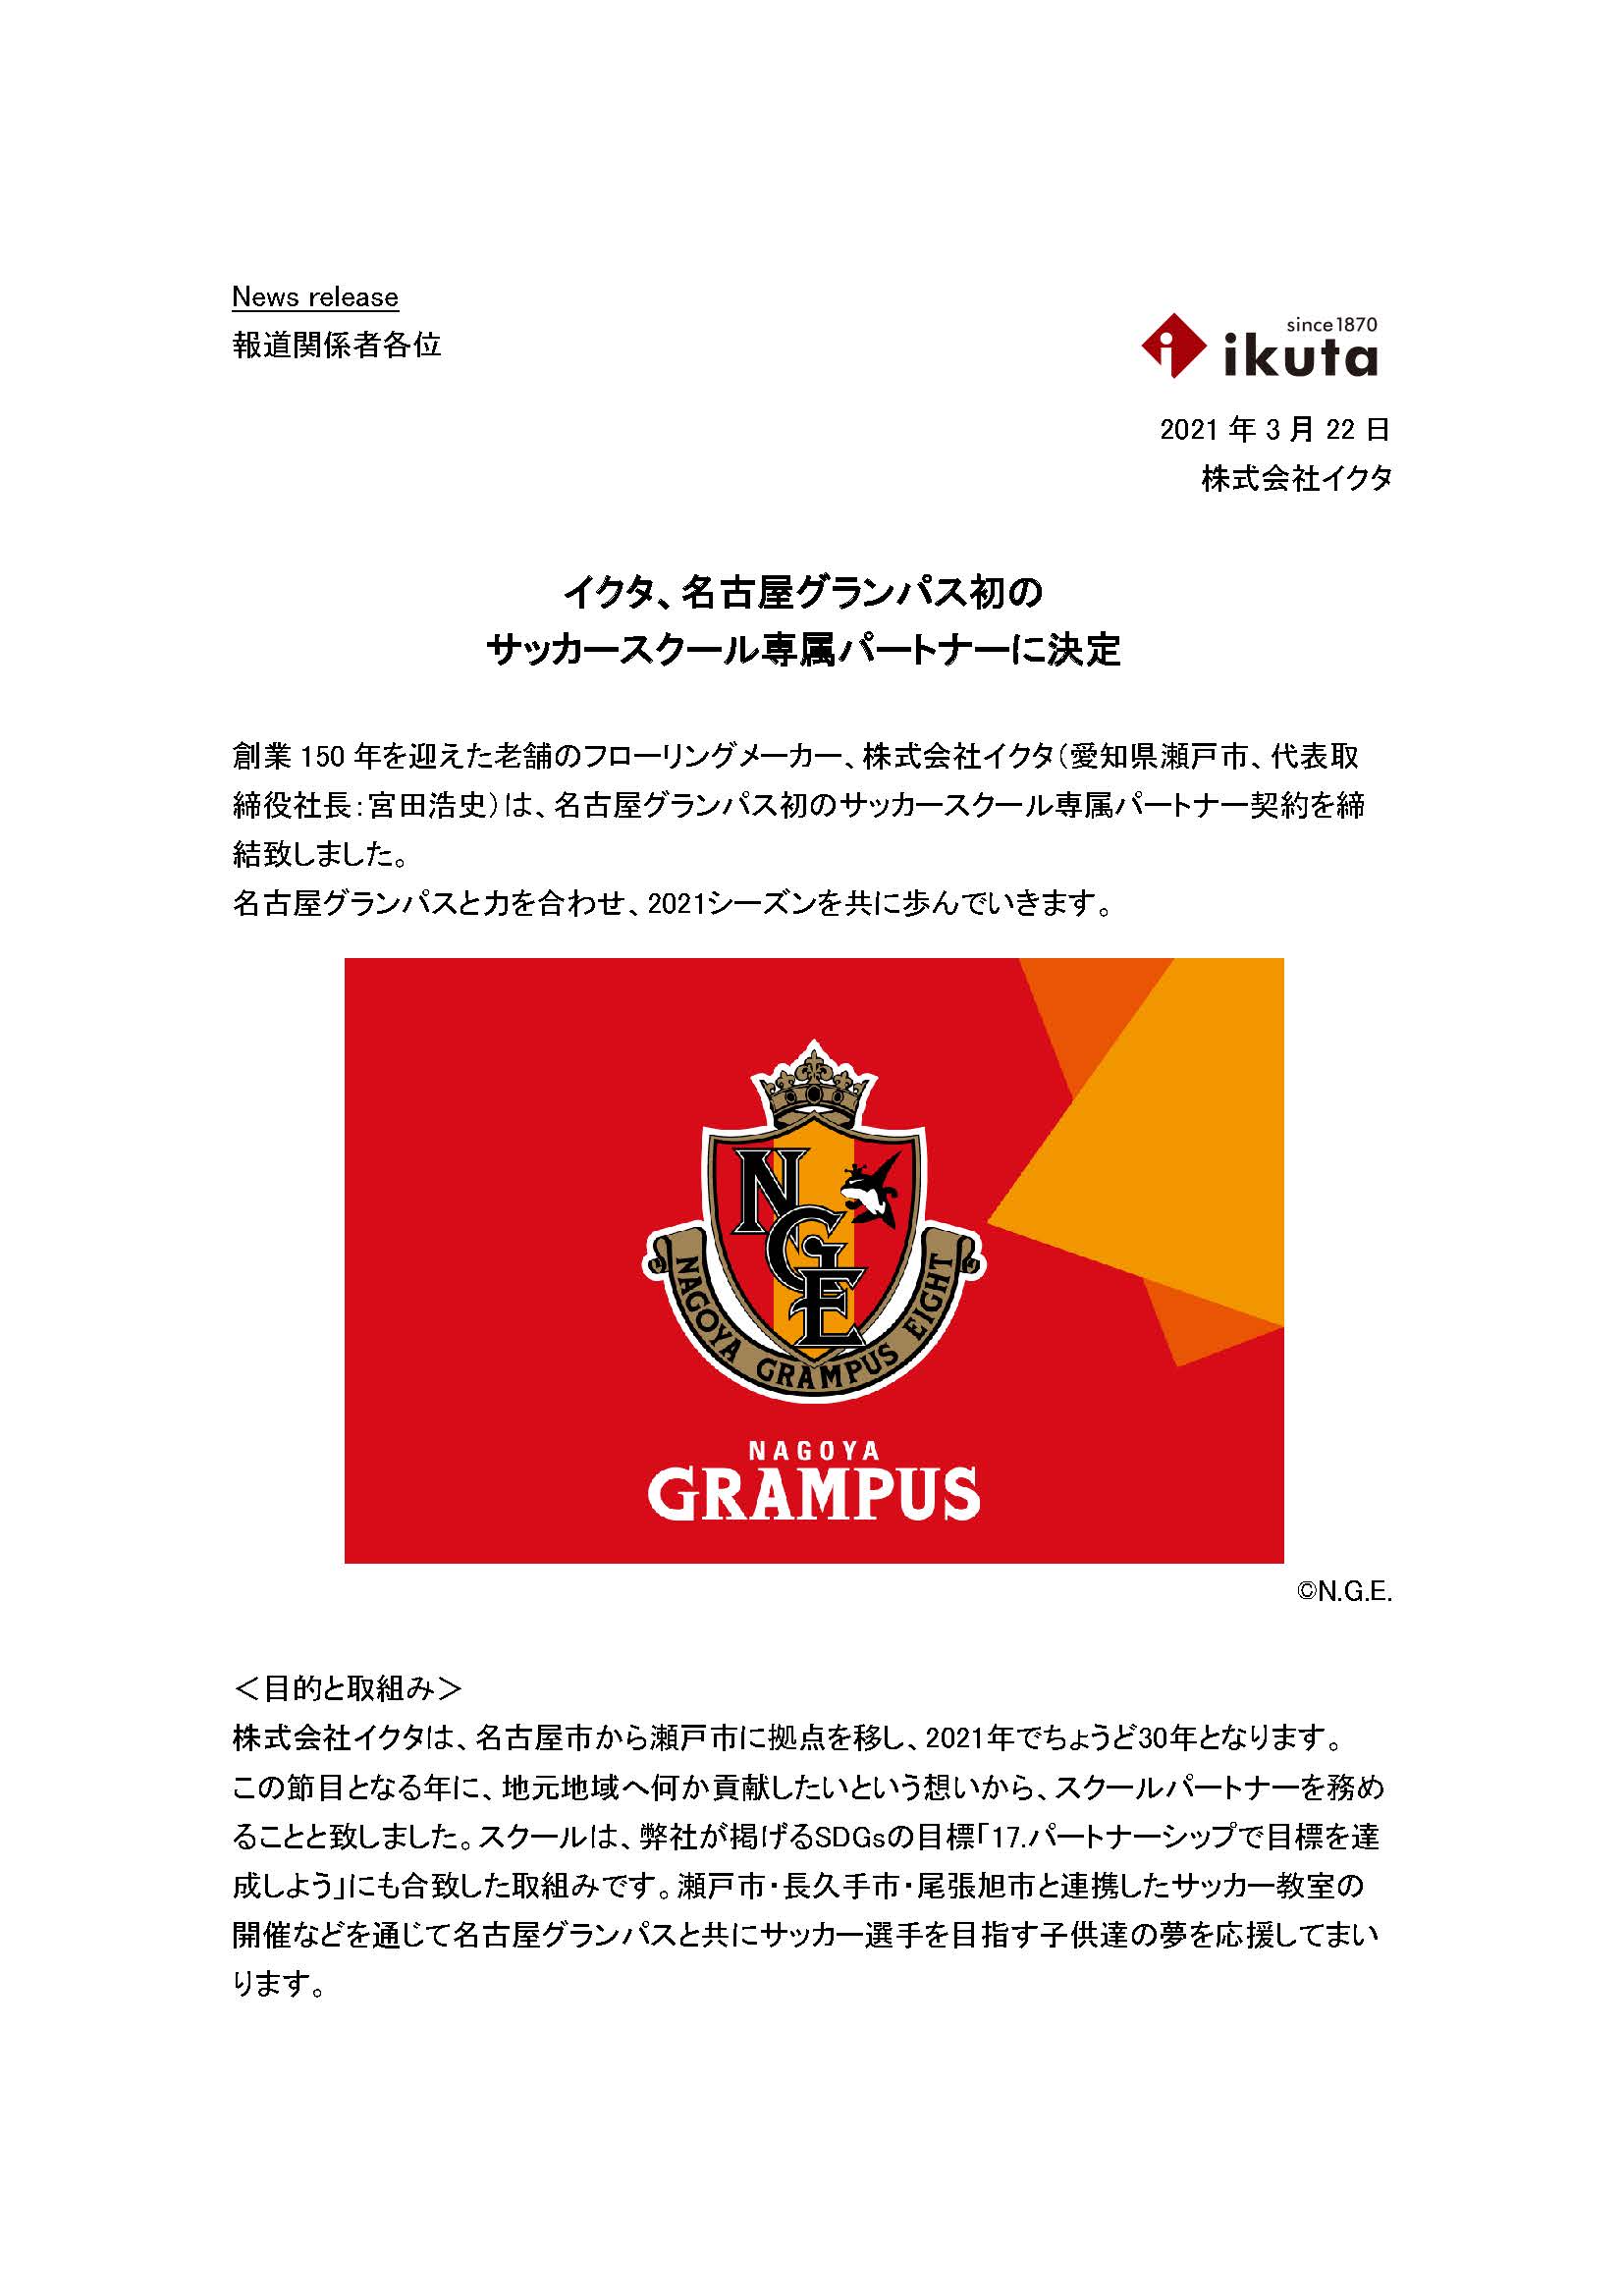 フローリング 床材の株式会社ikuta イクタ 名古屋グランパス初のサッカースクール専属パートナーに決定